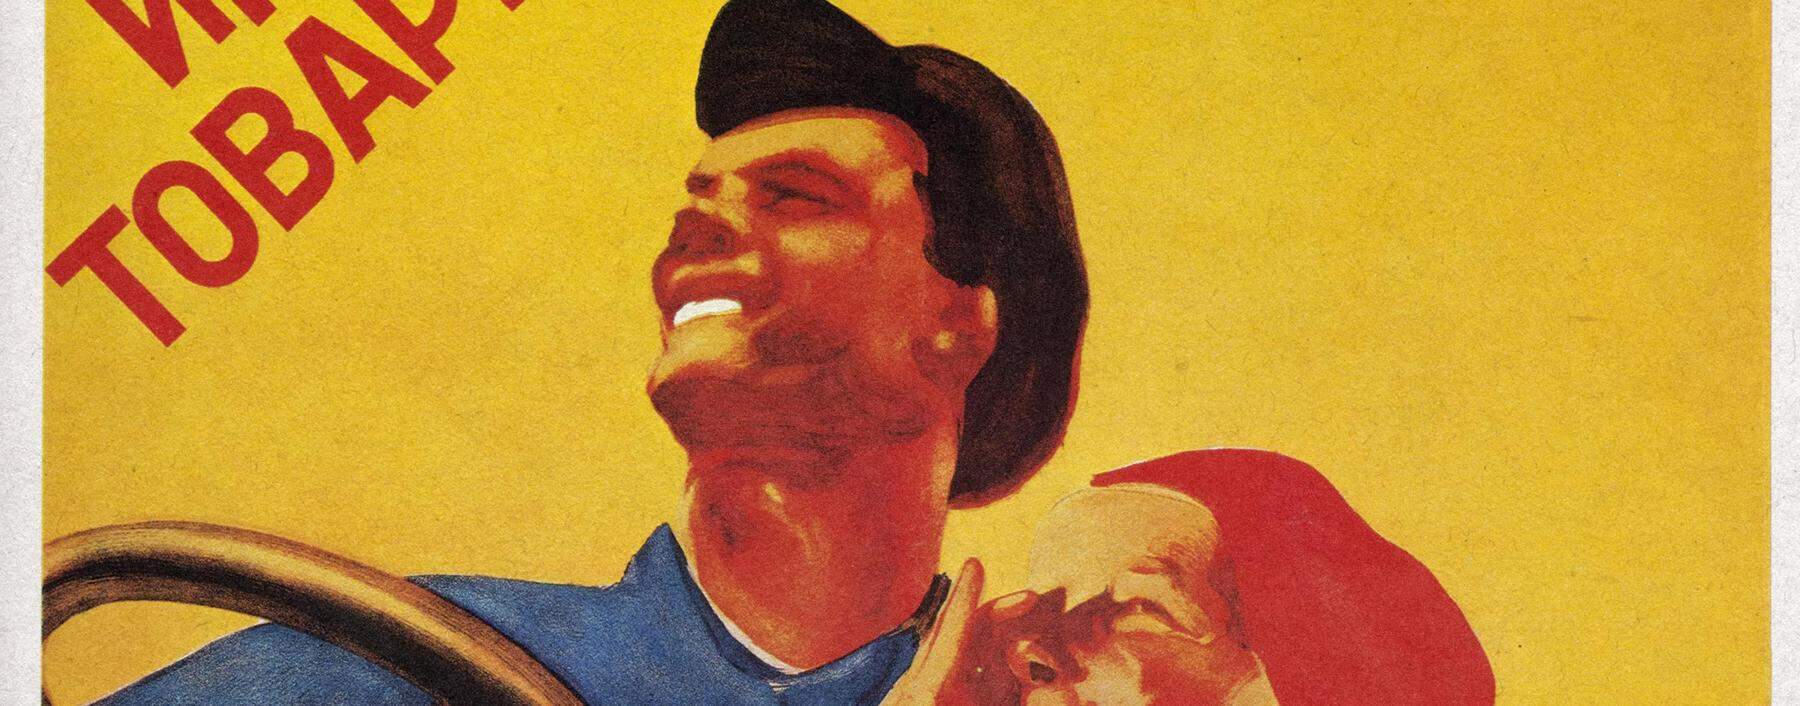 „Komm Genosse, zu uns in die Kolchose!“: ein sowjetisches Poster von 1930.